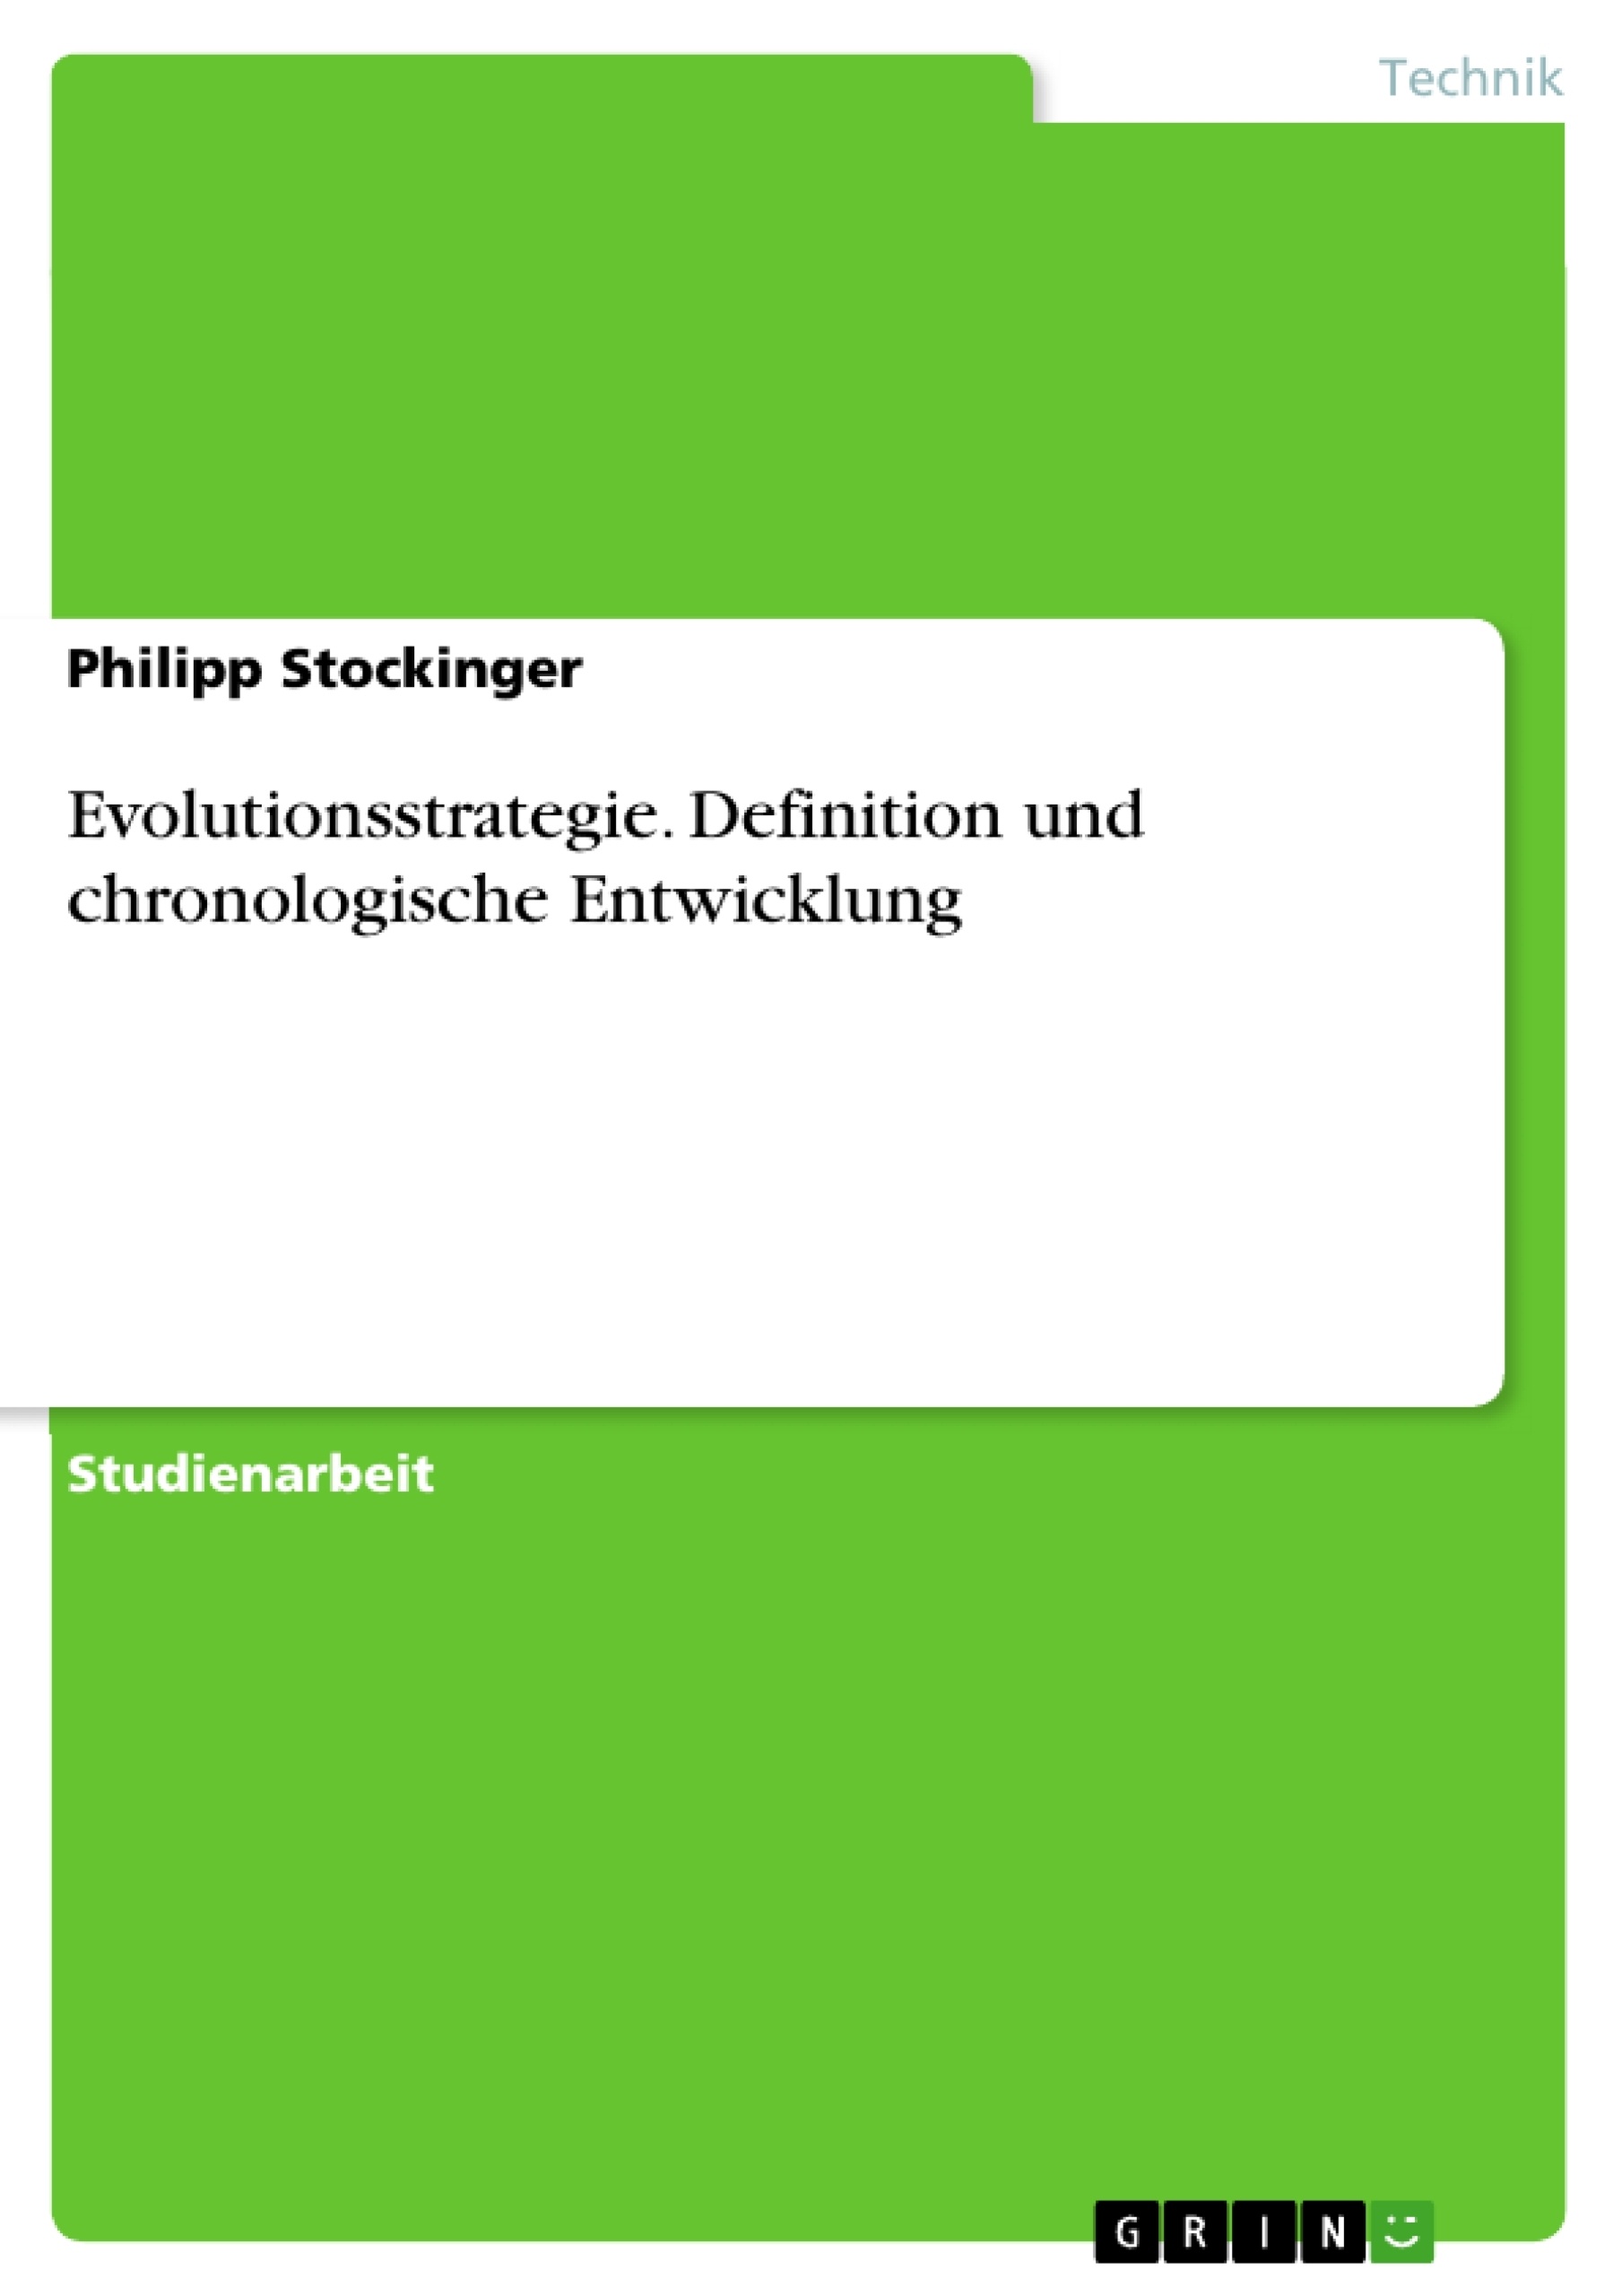 Title: Evolutionsstrategie. Definition und chronologische Entwicklung